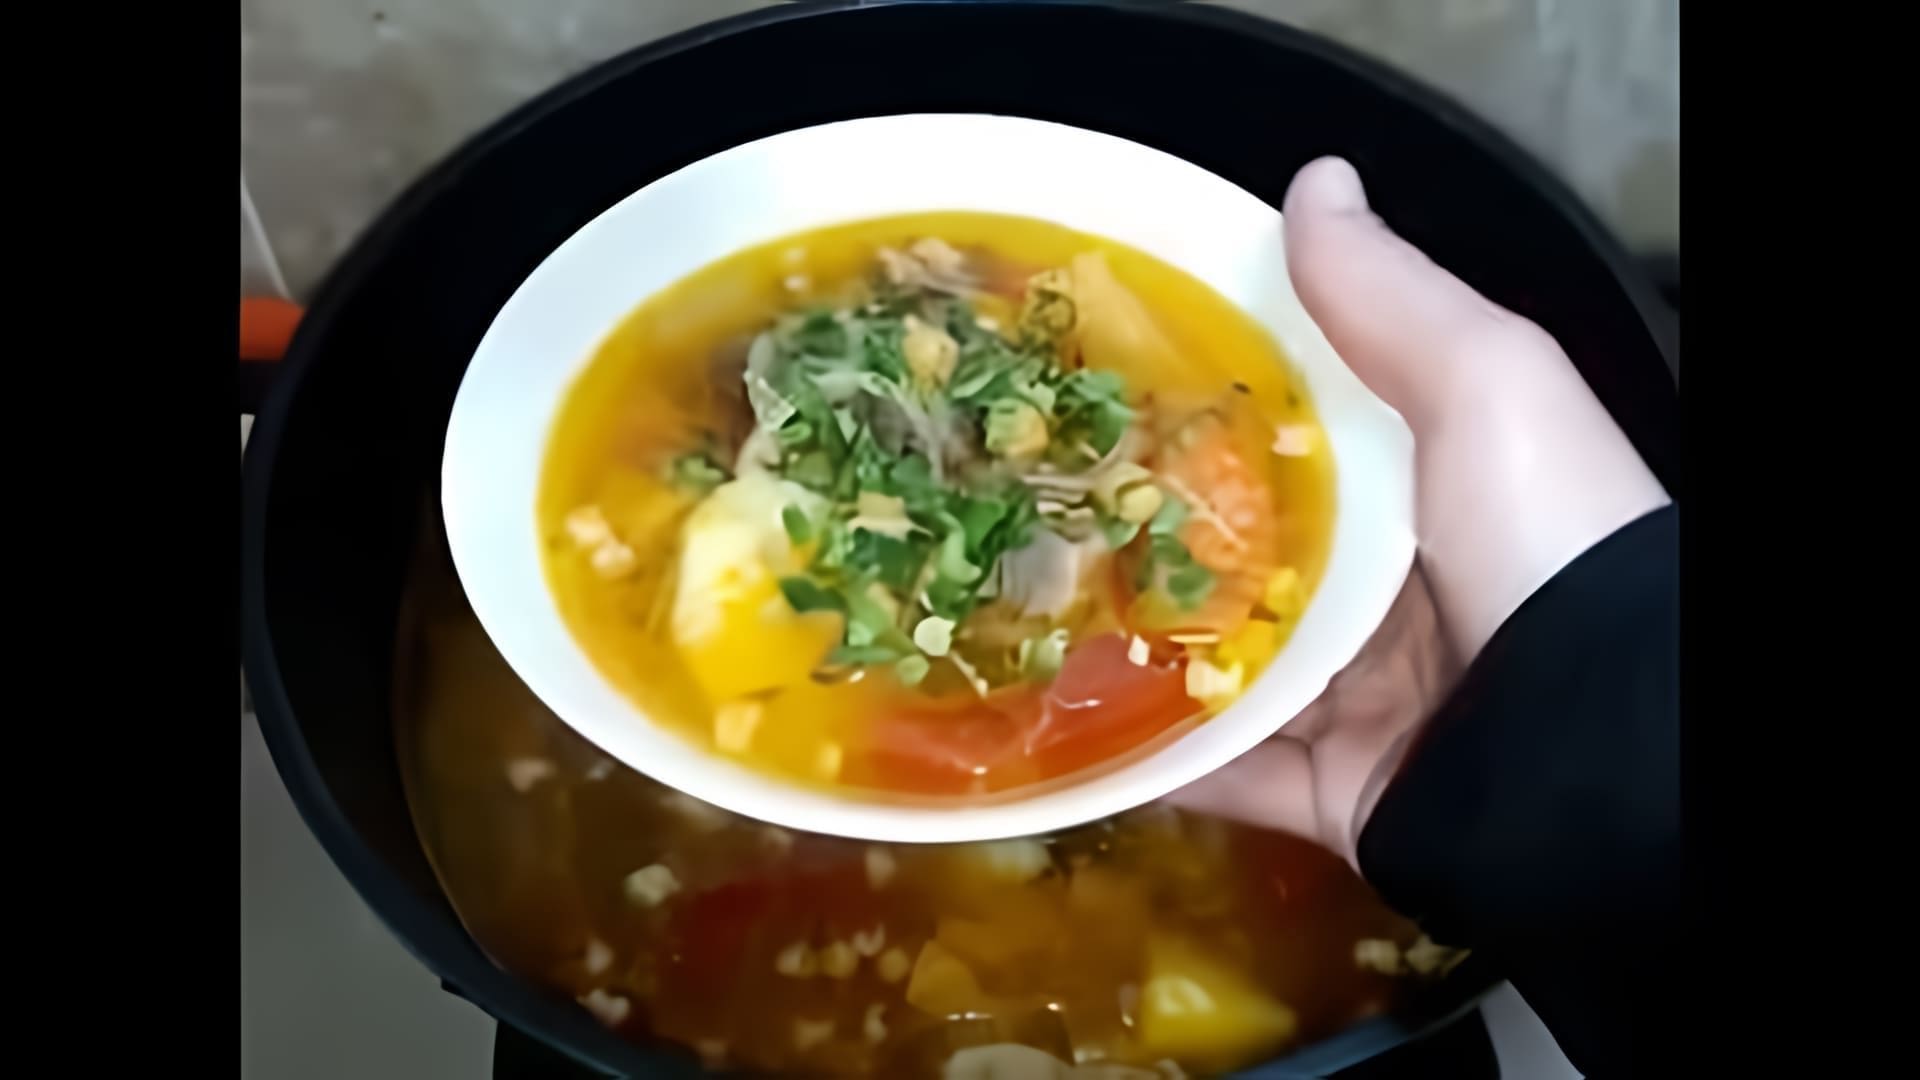 Шурпа - это классический узбекский суп, который готовится из мяса, овощей и специй